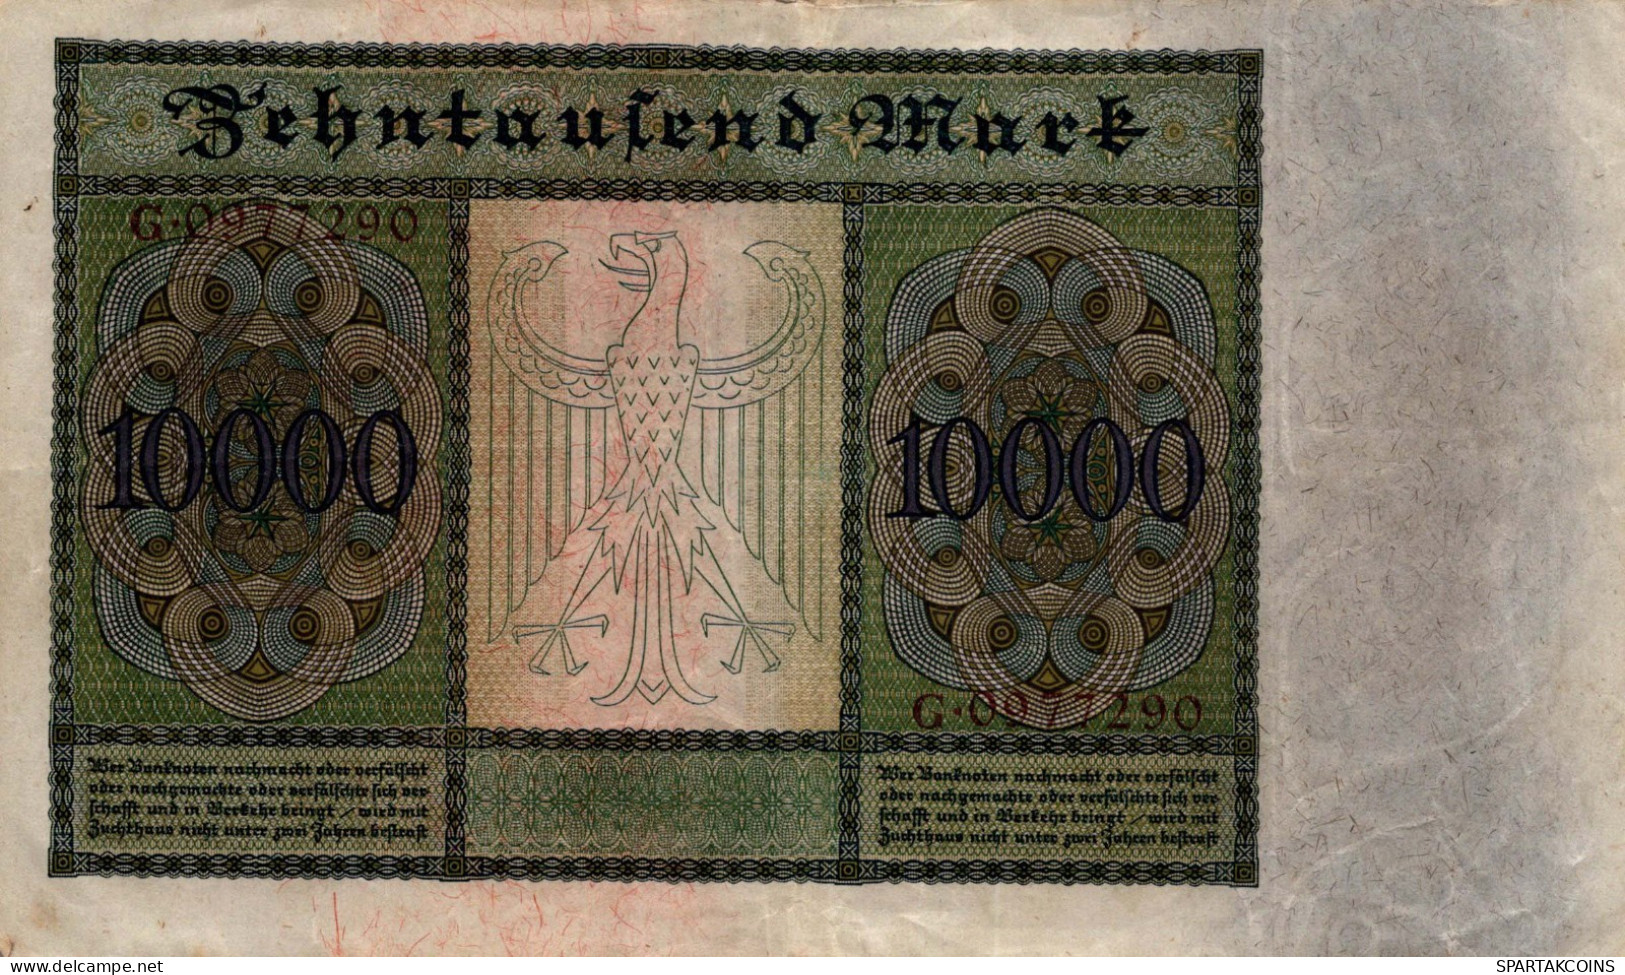 10000 MARK 1922 Stadt BERLIN DEUTSCHLAND Papiergeld Banknote #PL327 - [11] Local Banknote Issues